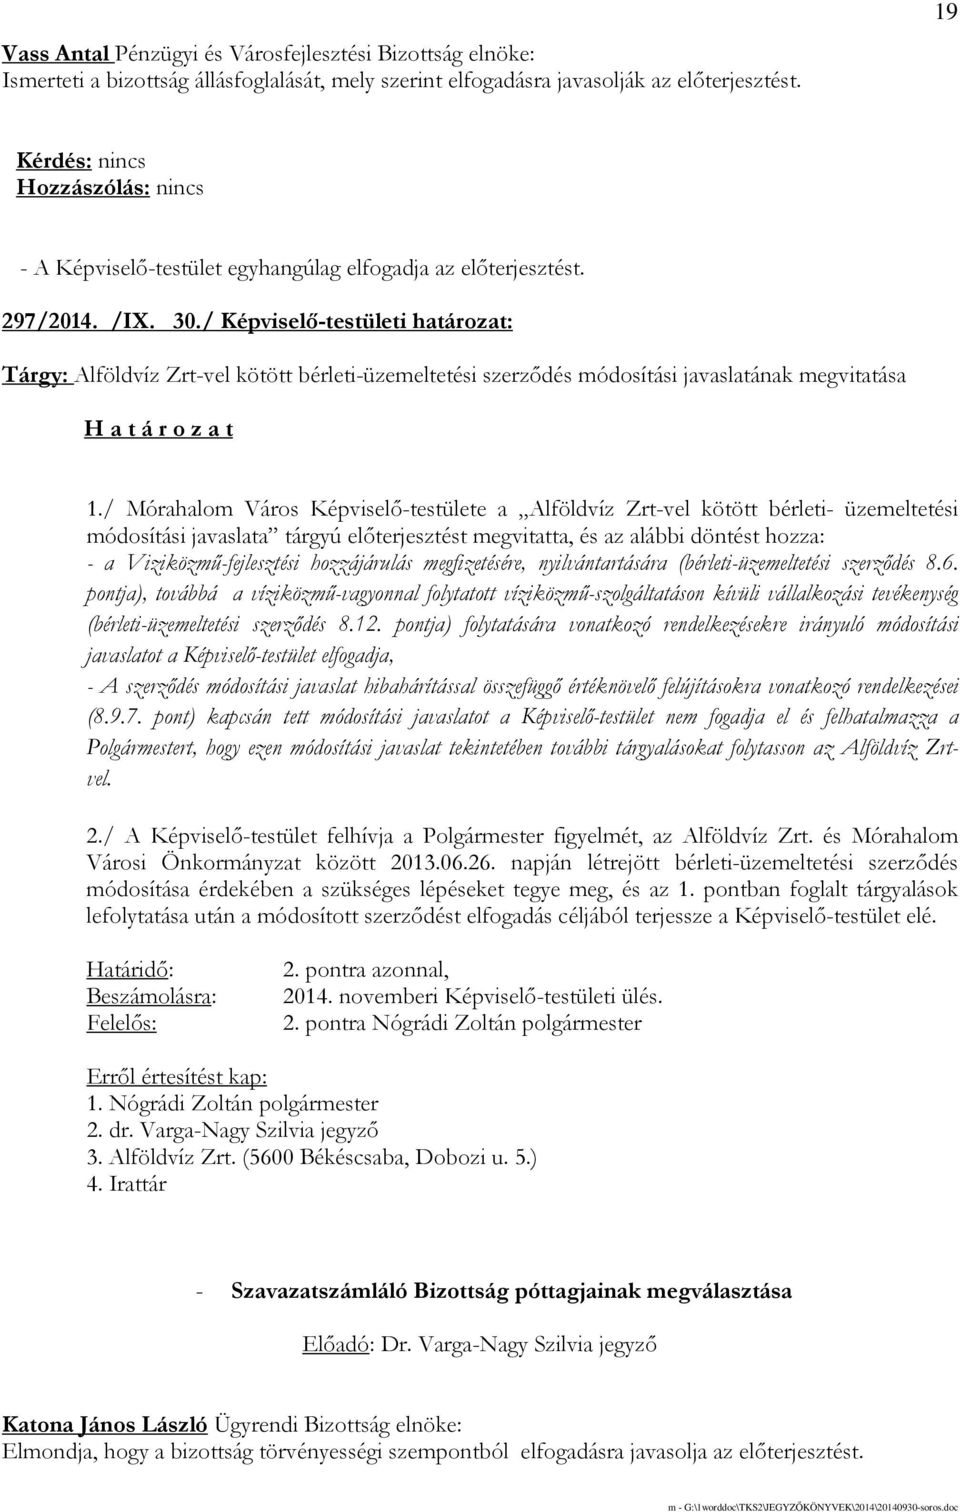 / Mórahalom Város Képviselı-testülete a Alföldvíz Zrt-vel kötött bérleti- üzemeltetési módosítási javaslata tárgyú elıterjesztést megvitatta, és az alábbi döntést hozza: - a Viziközmő-fejlesztési